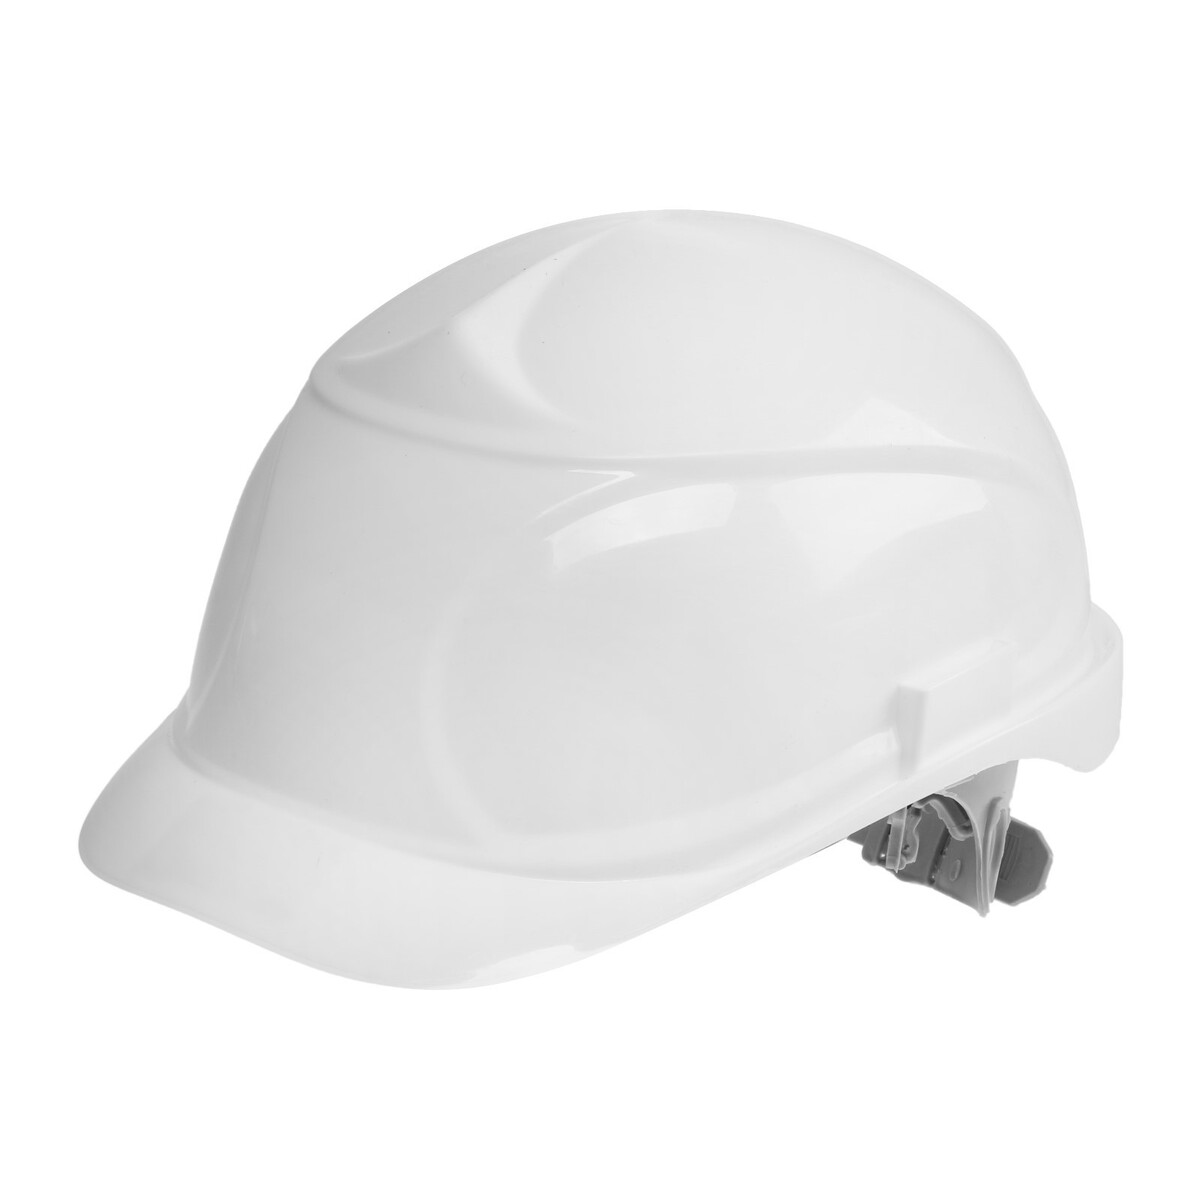 Каска защитная тундра, для строительно-монтажных работ, с пластиковым оголовьем, белая каска защитная белая